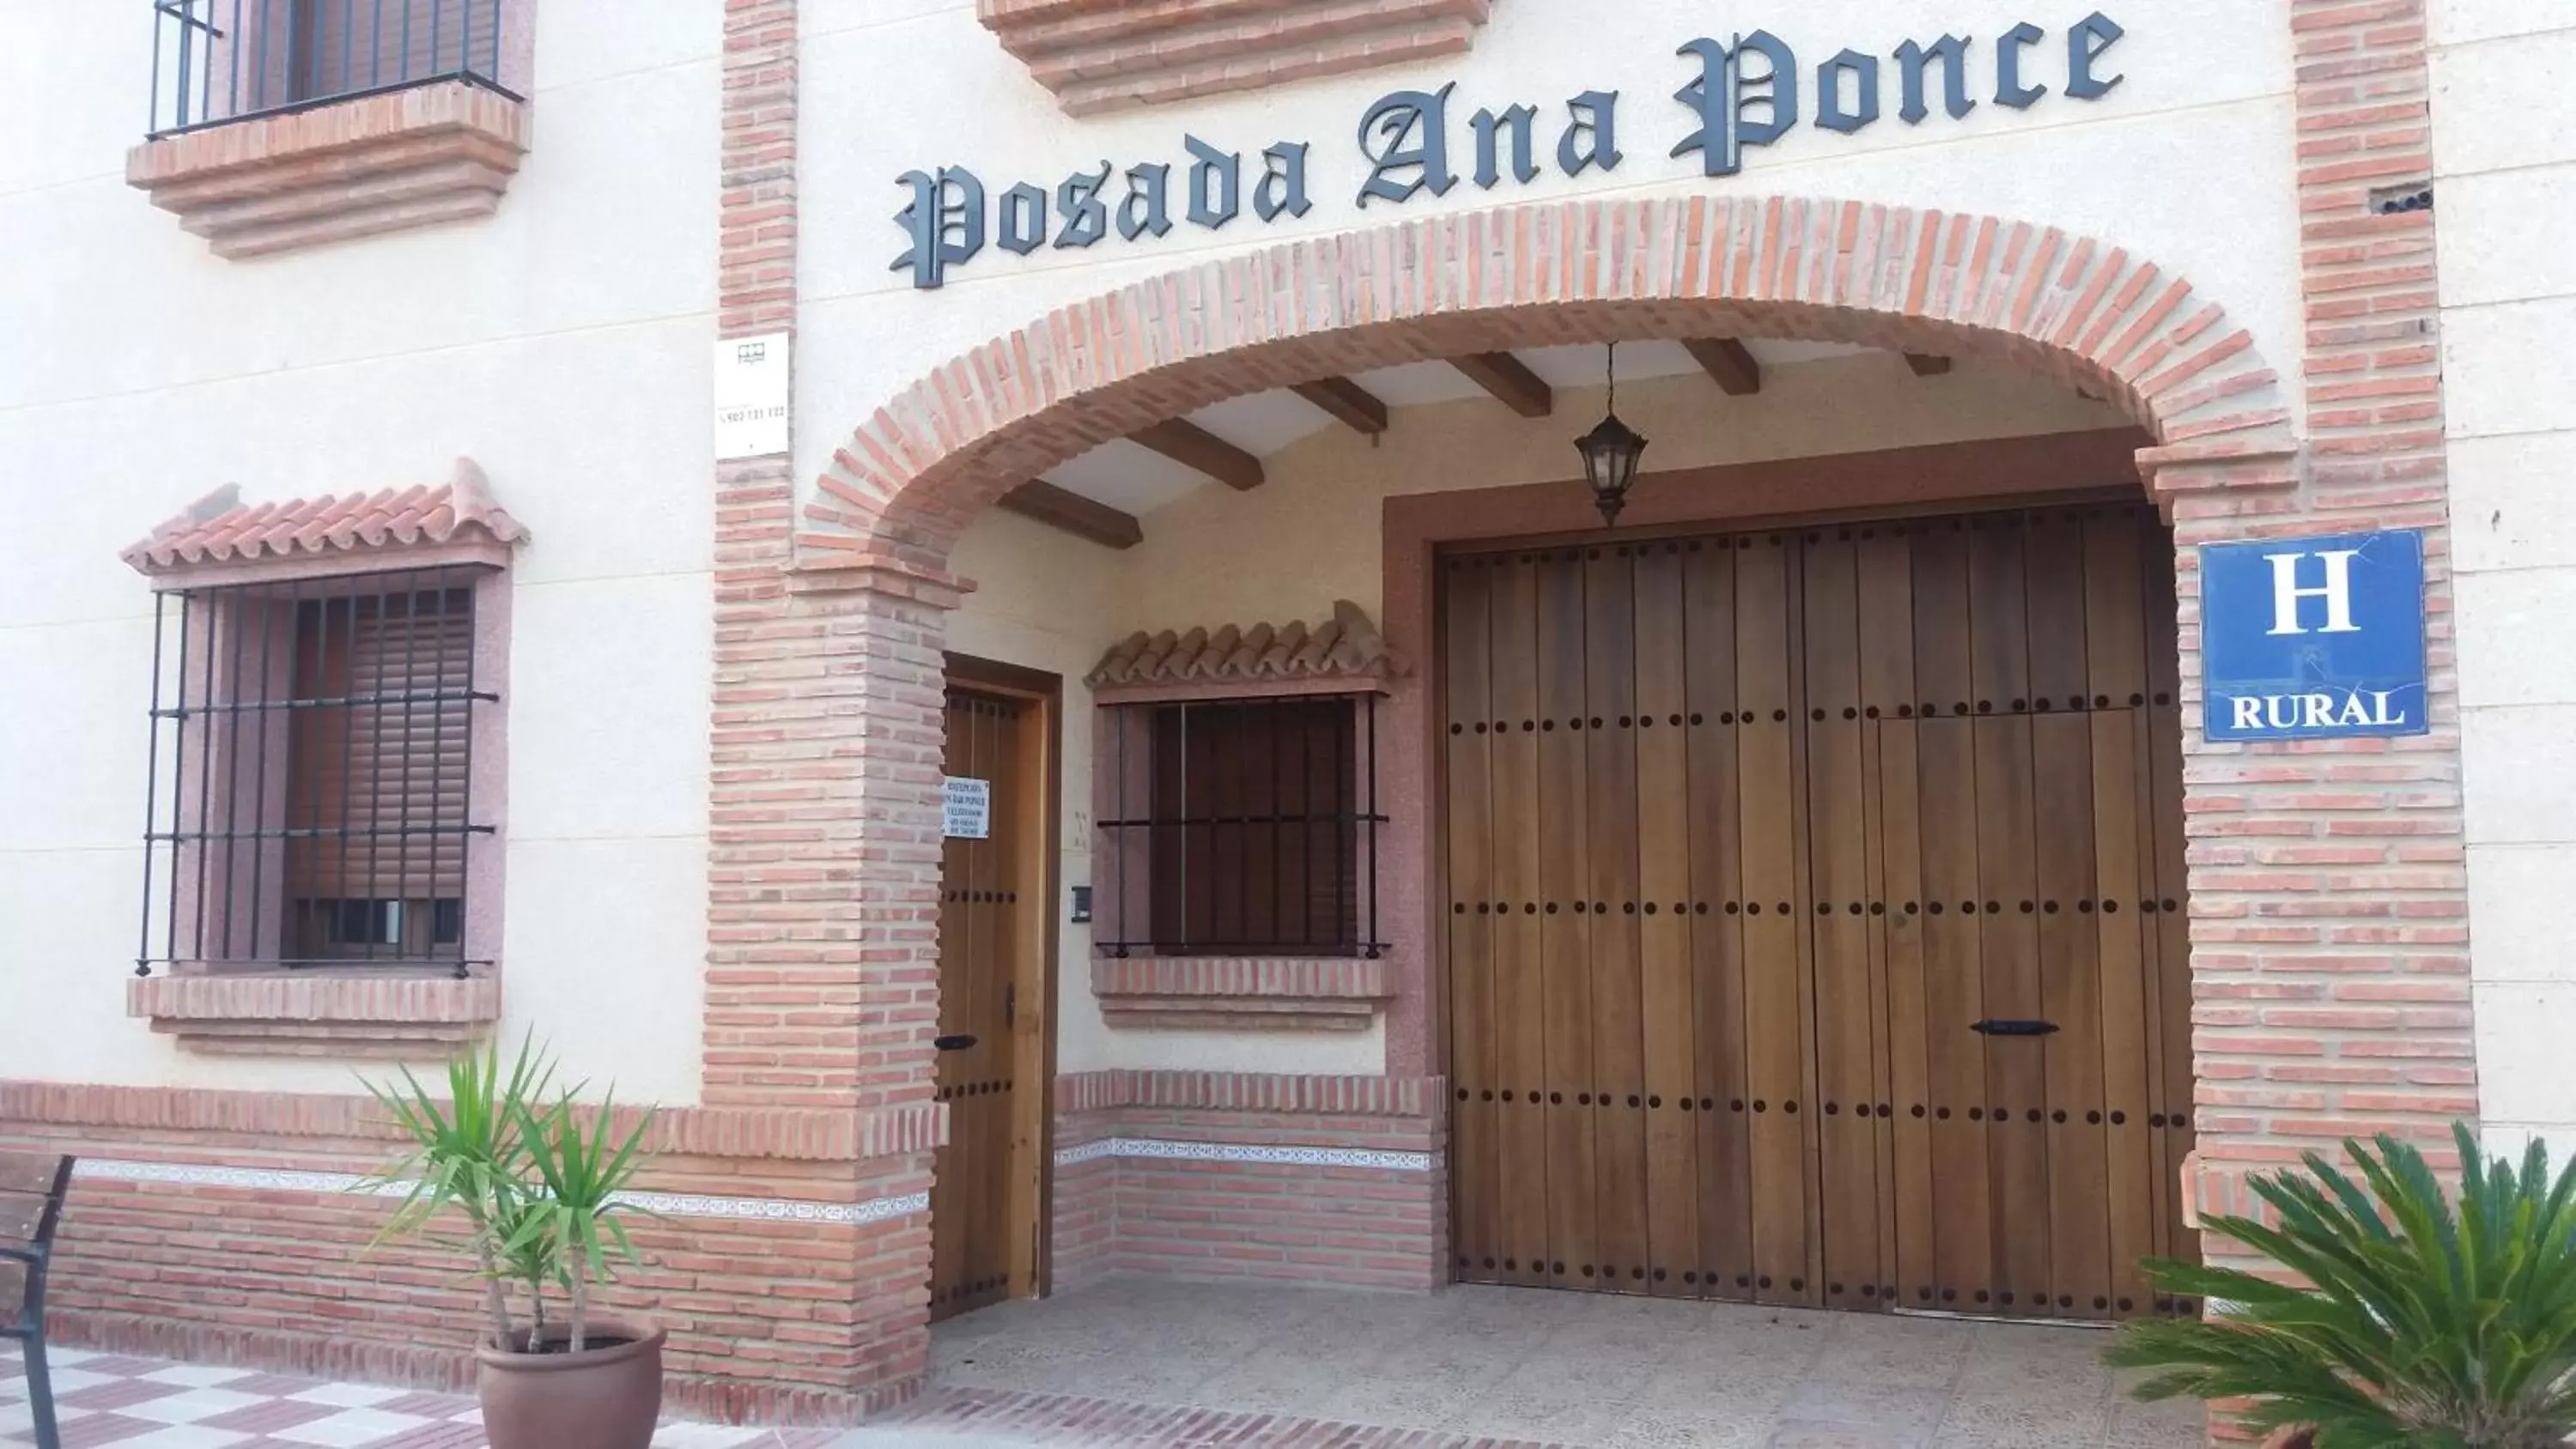 Facade/entrance in Posada Ana Ponce